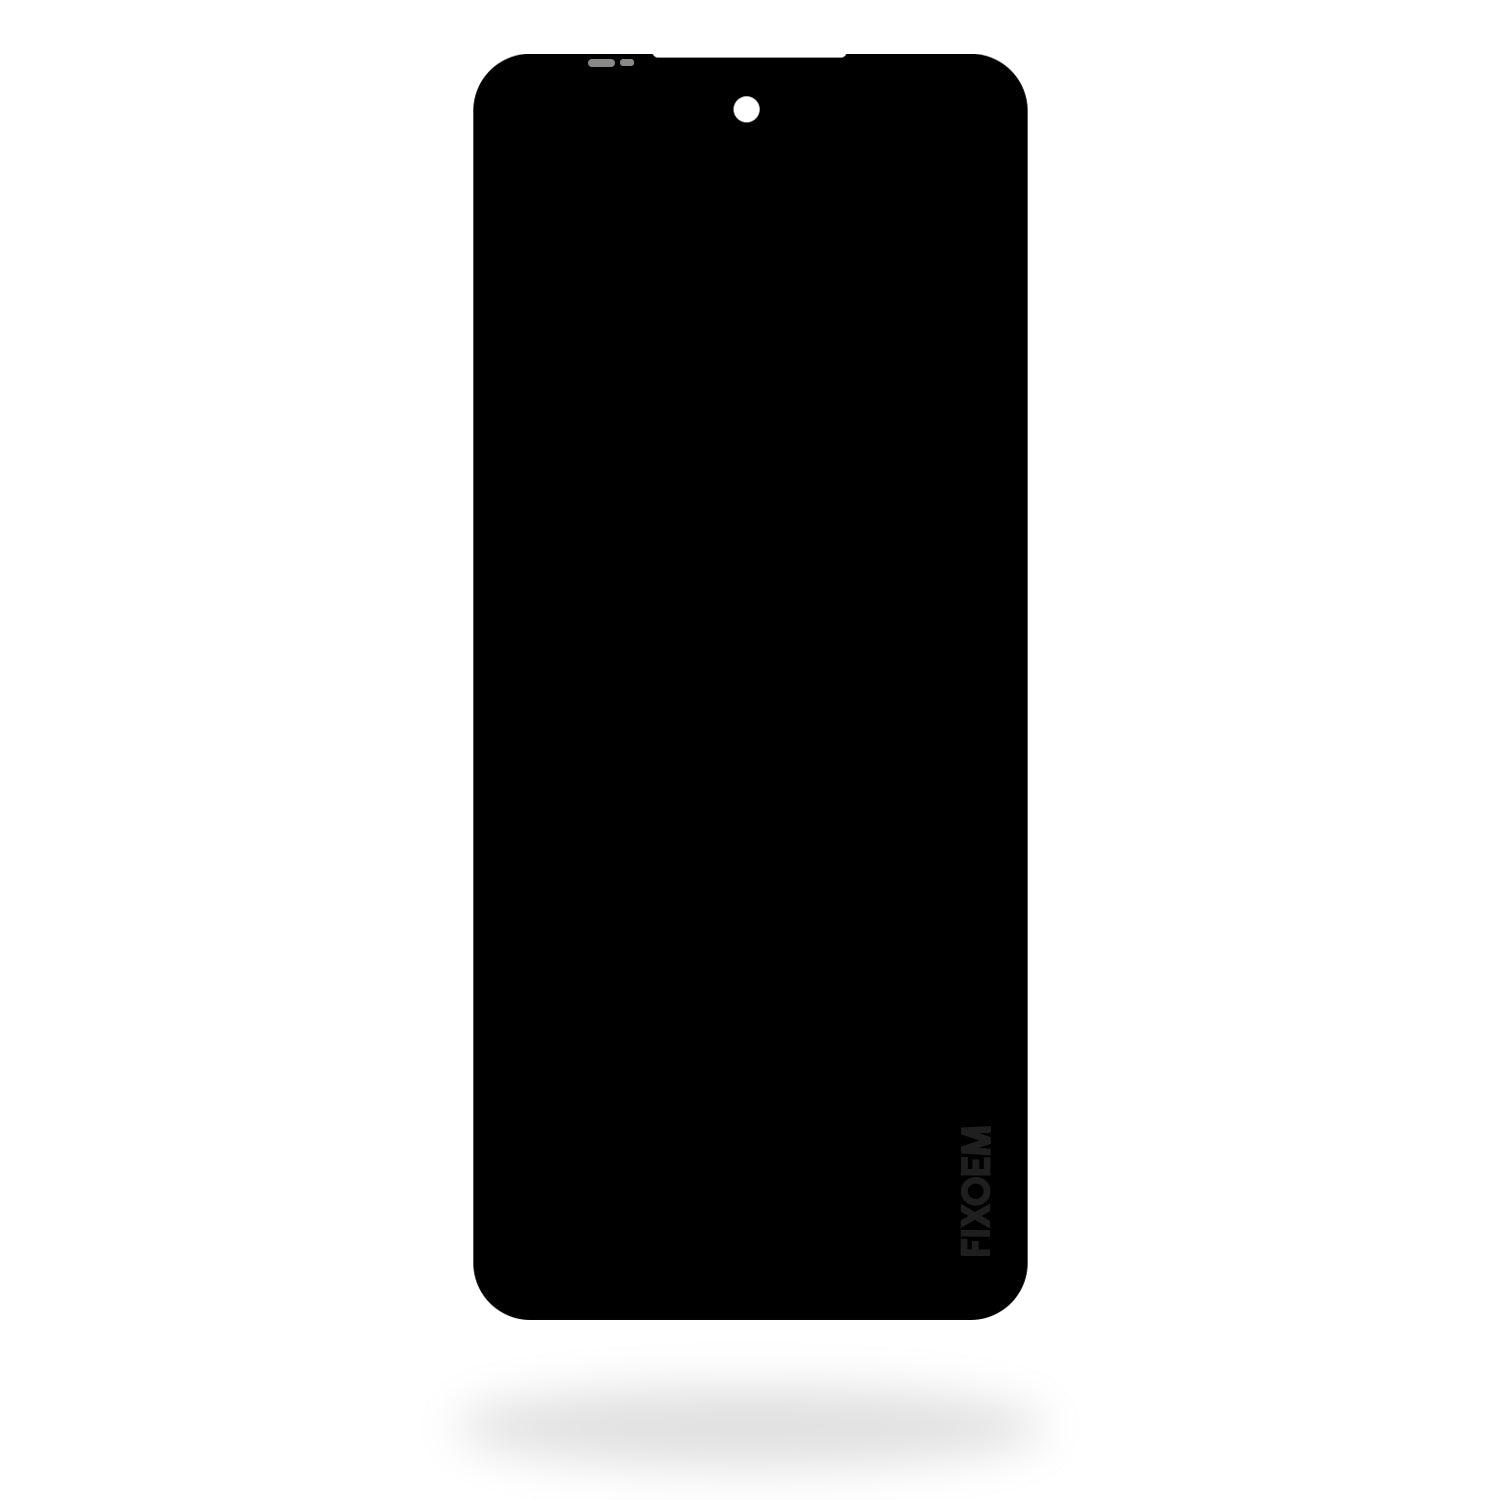 Display Moto G Stylus 5G 2022 XT2131 -DL -1 -3 -4 a solo $ 380.00 Refaccion y puestos celulares, refurbish y microelectronica.- FixOEM